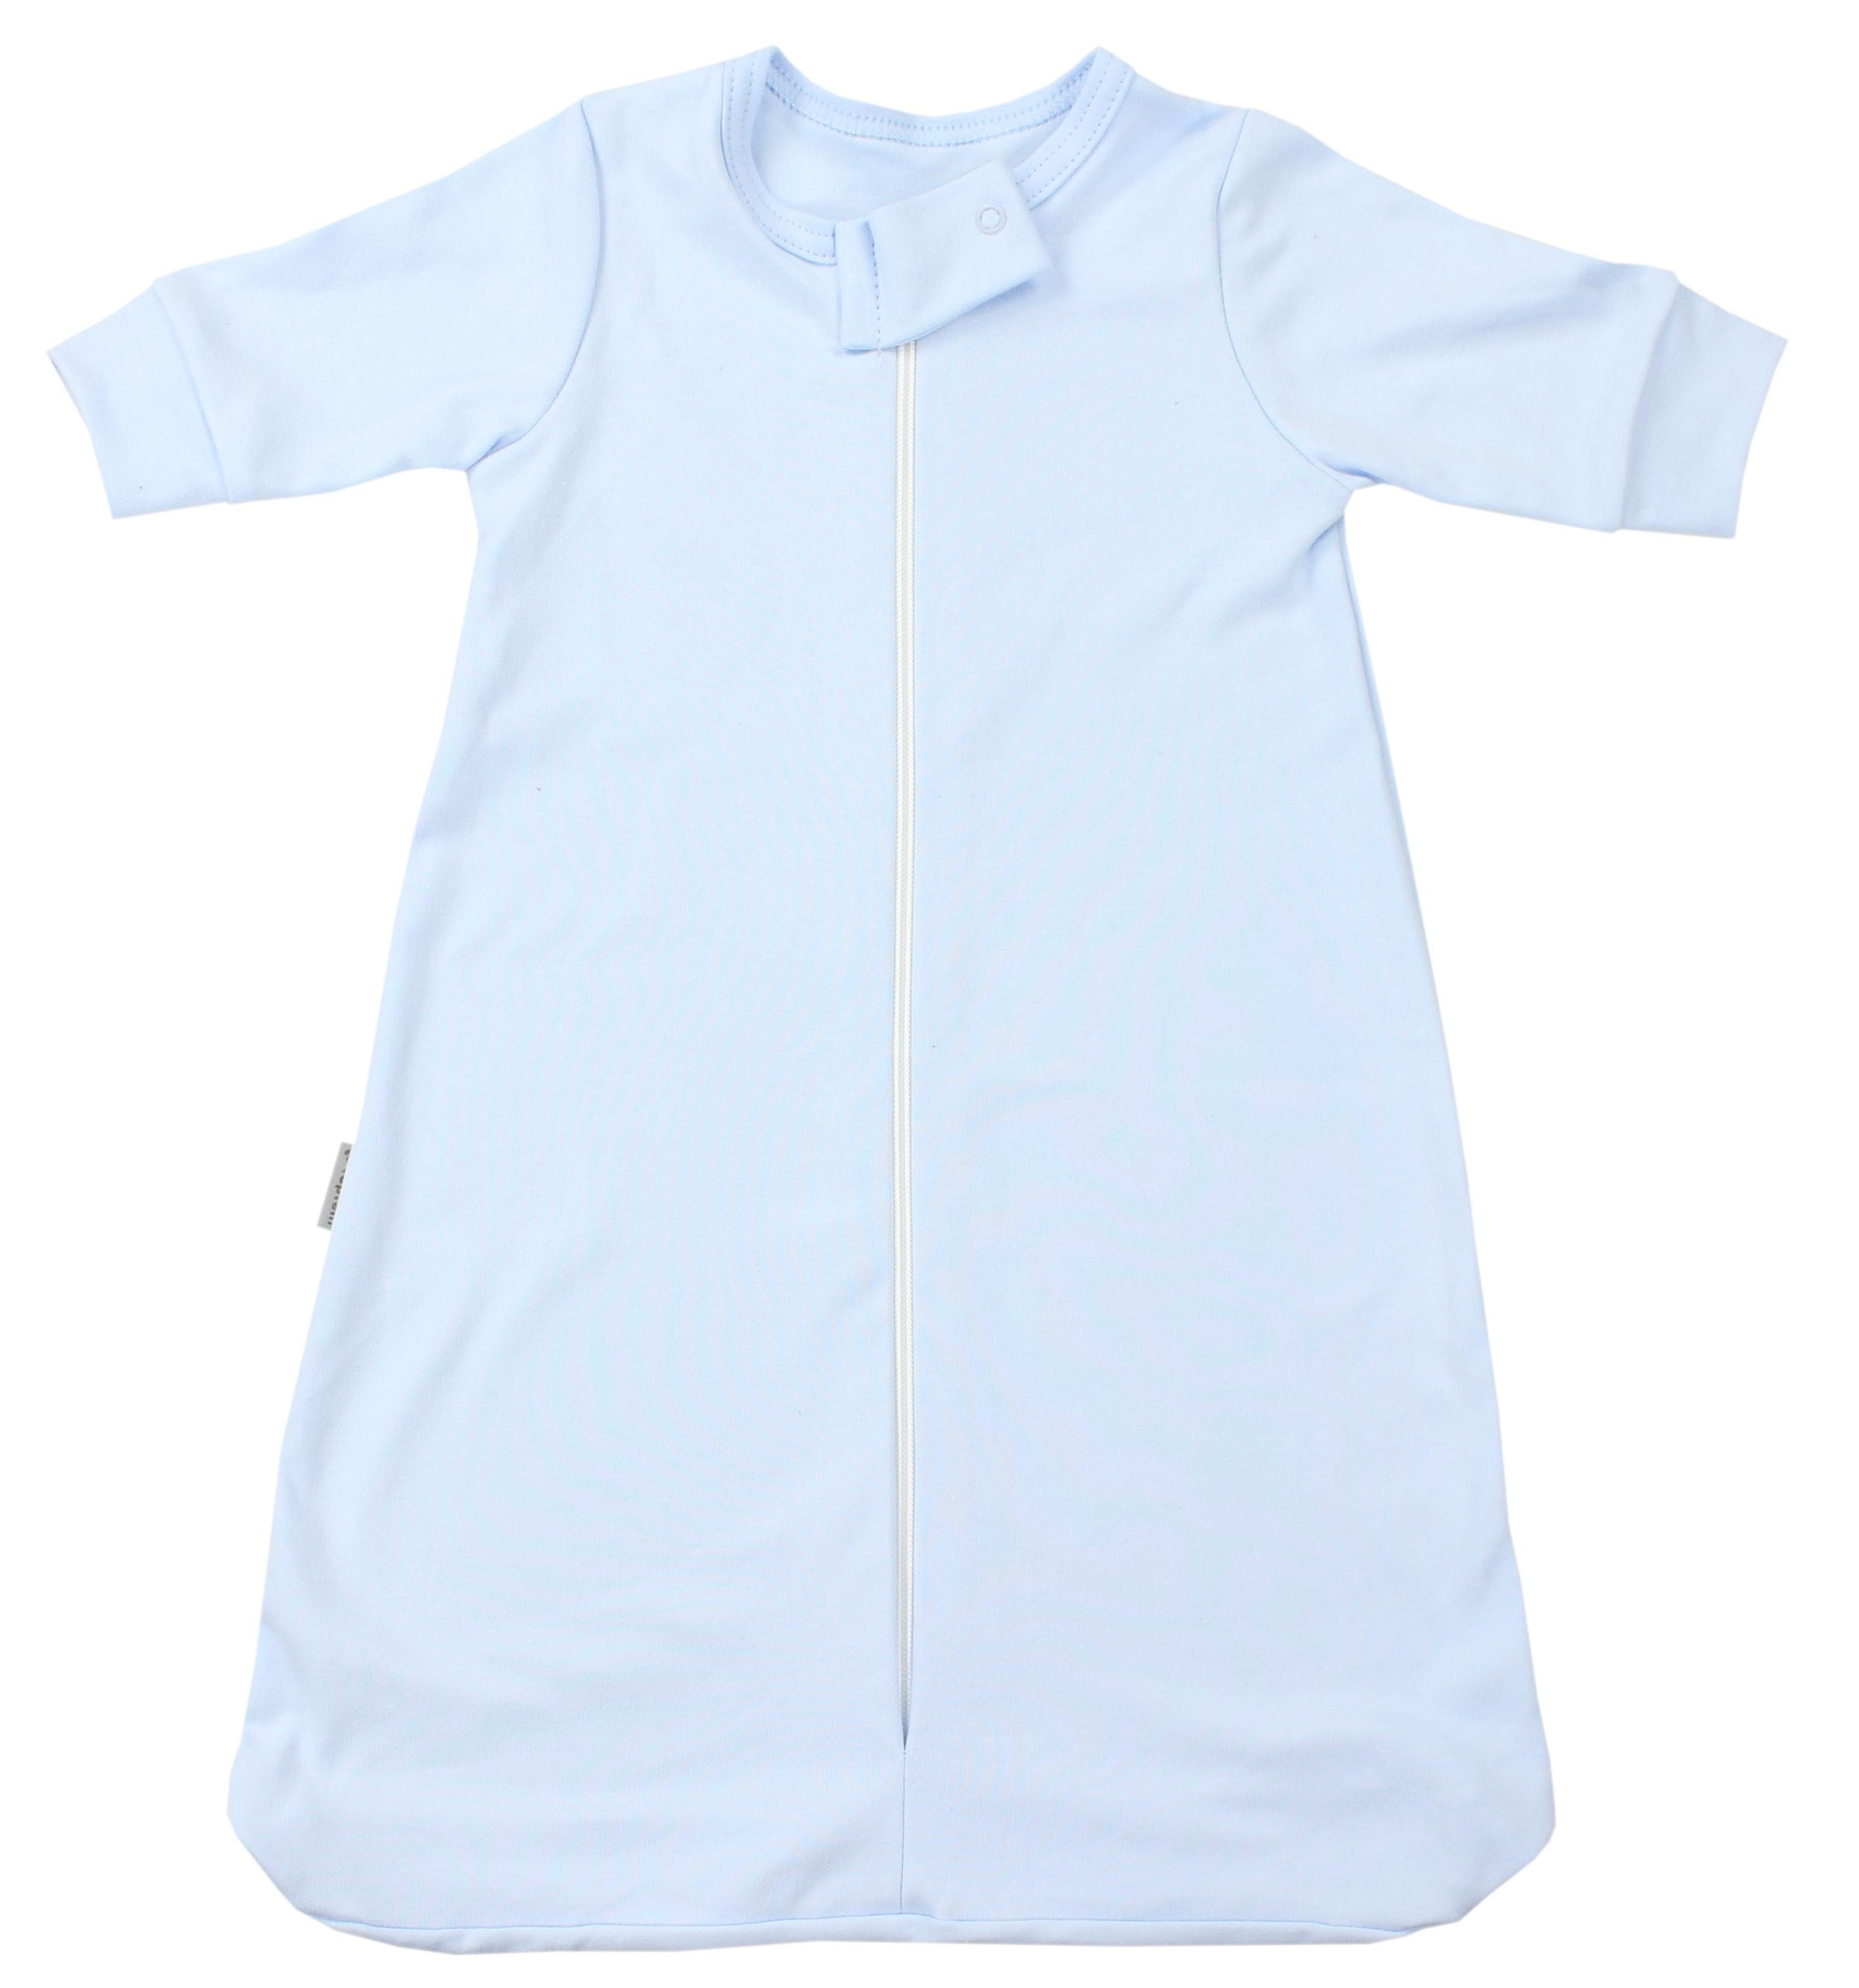 TupTam Babyschlafsack OEKO-TEX zertifiziert Baby Schlafsack mit Armen 0.2 TOG Unisex Blau